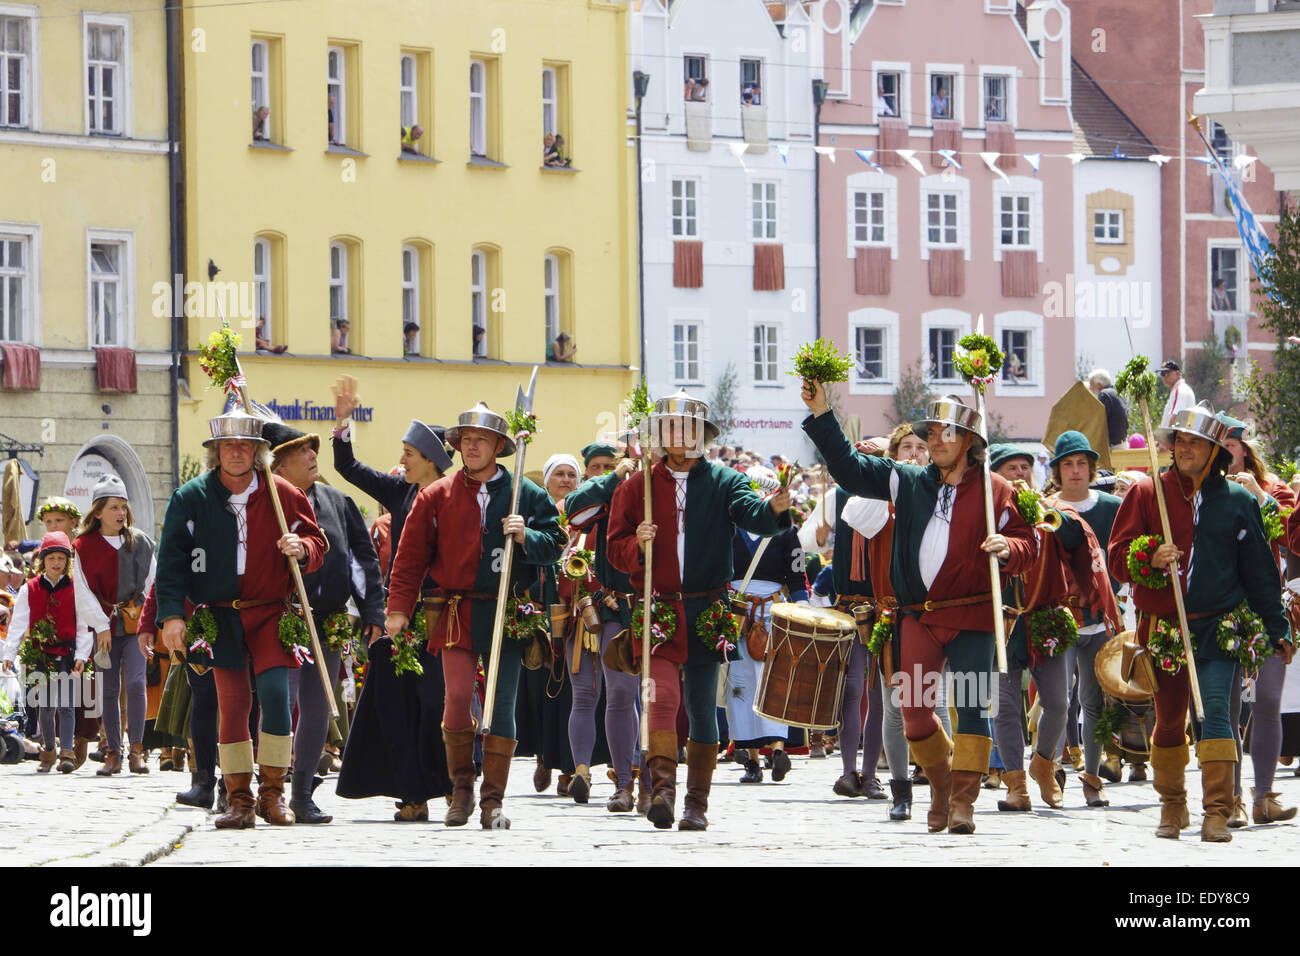 Mittelalterliche Spiele während der Landshuter Hochzeit in Landshut, Niederbayern, Bayern, Deutschland, Europa, Medieval games d Stock Photo